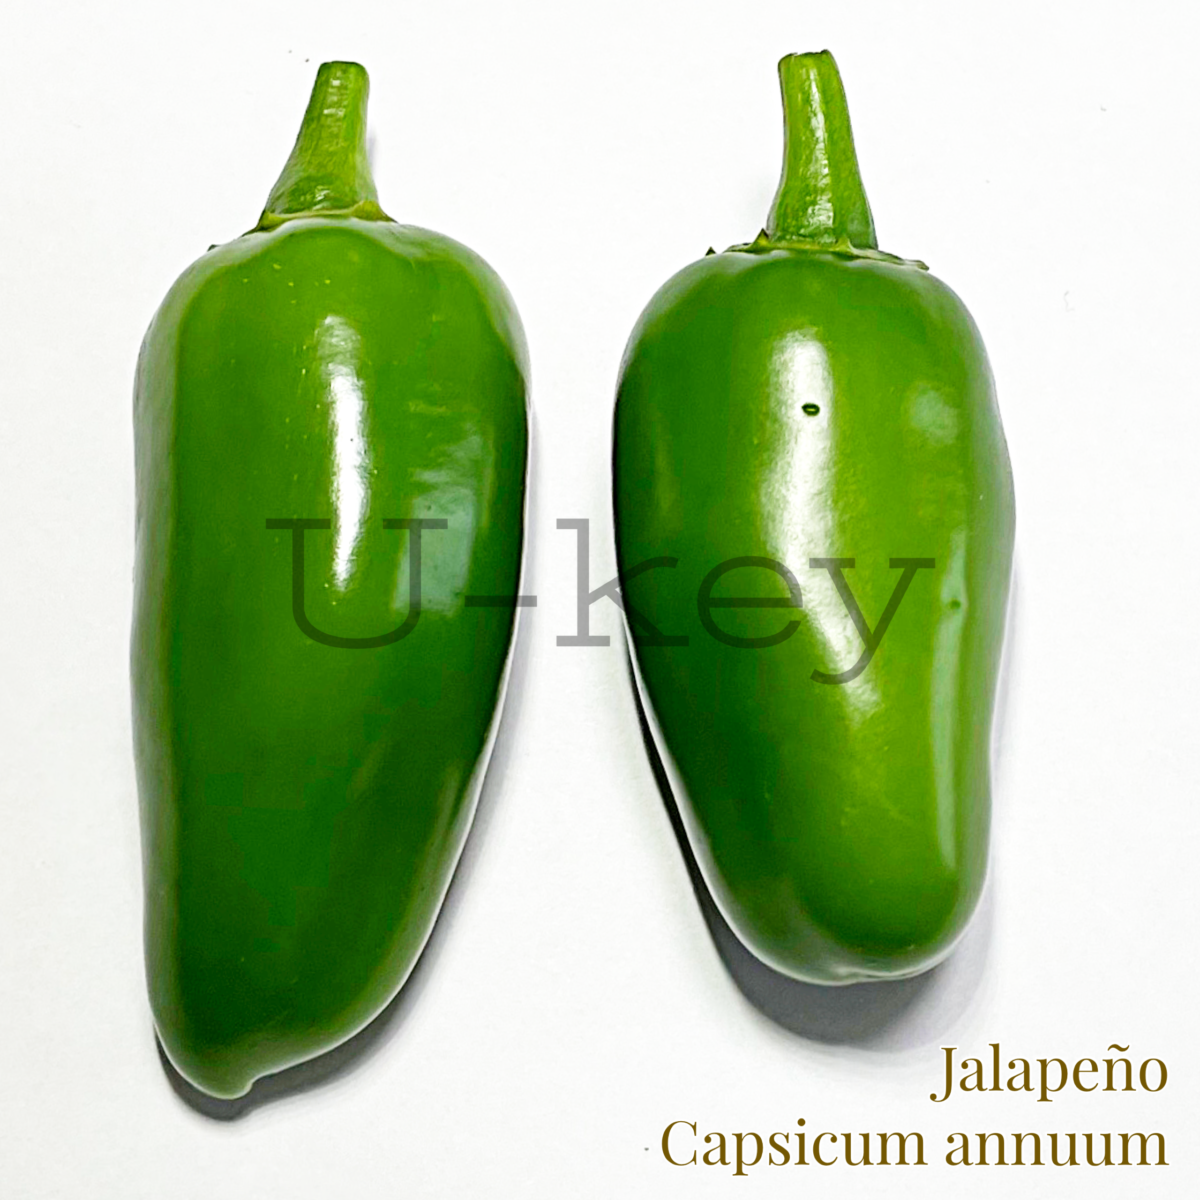 Pepper ‘Jalapeño’,Capsicum annuum